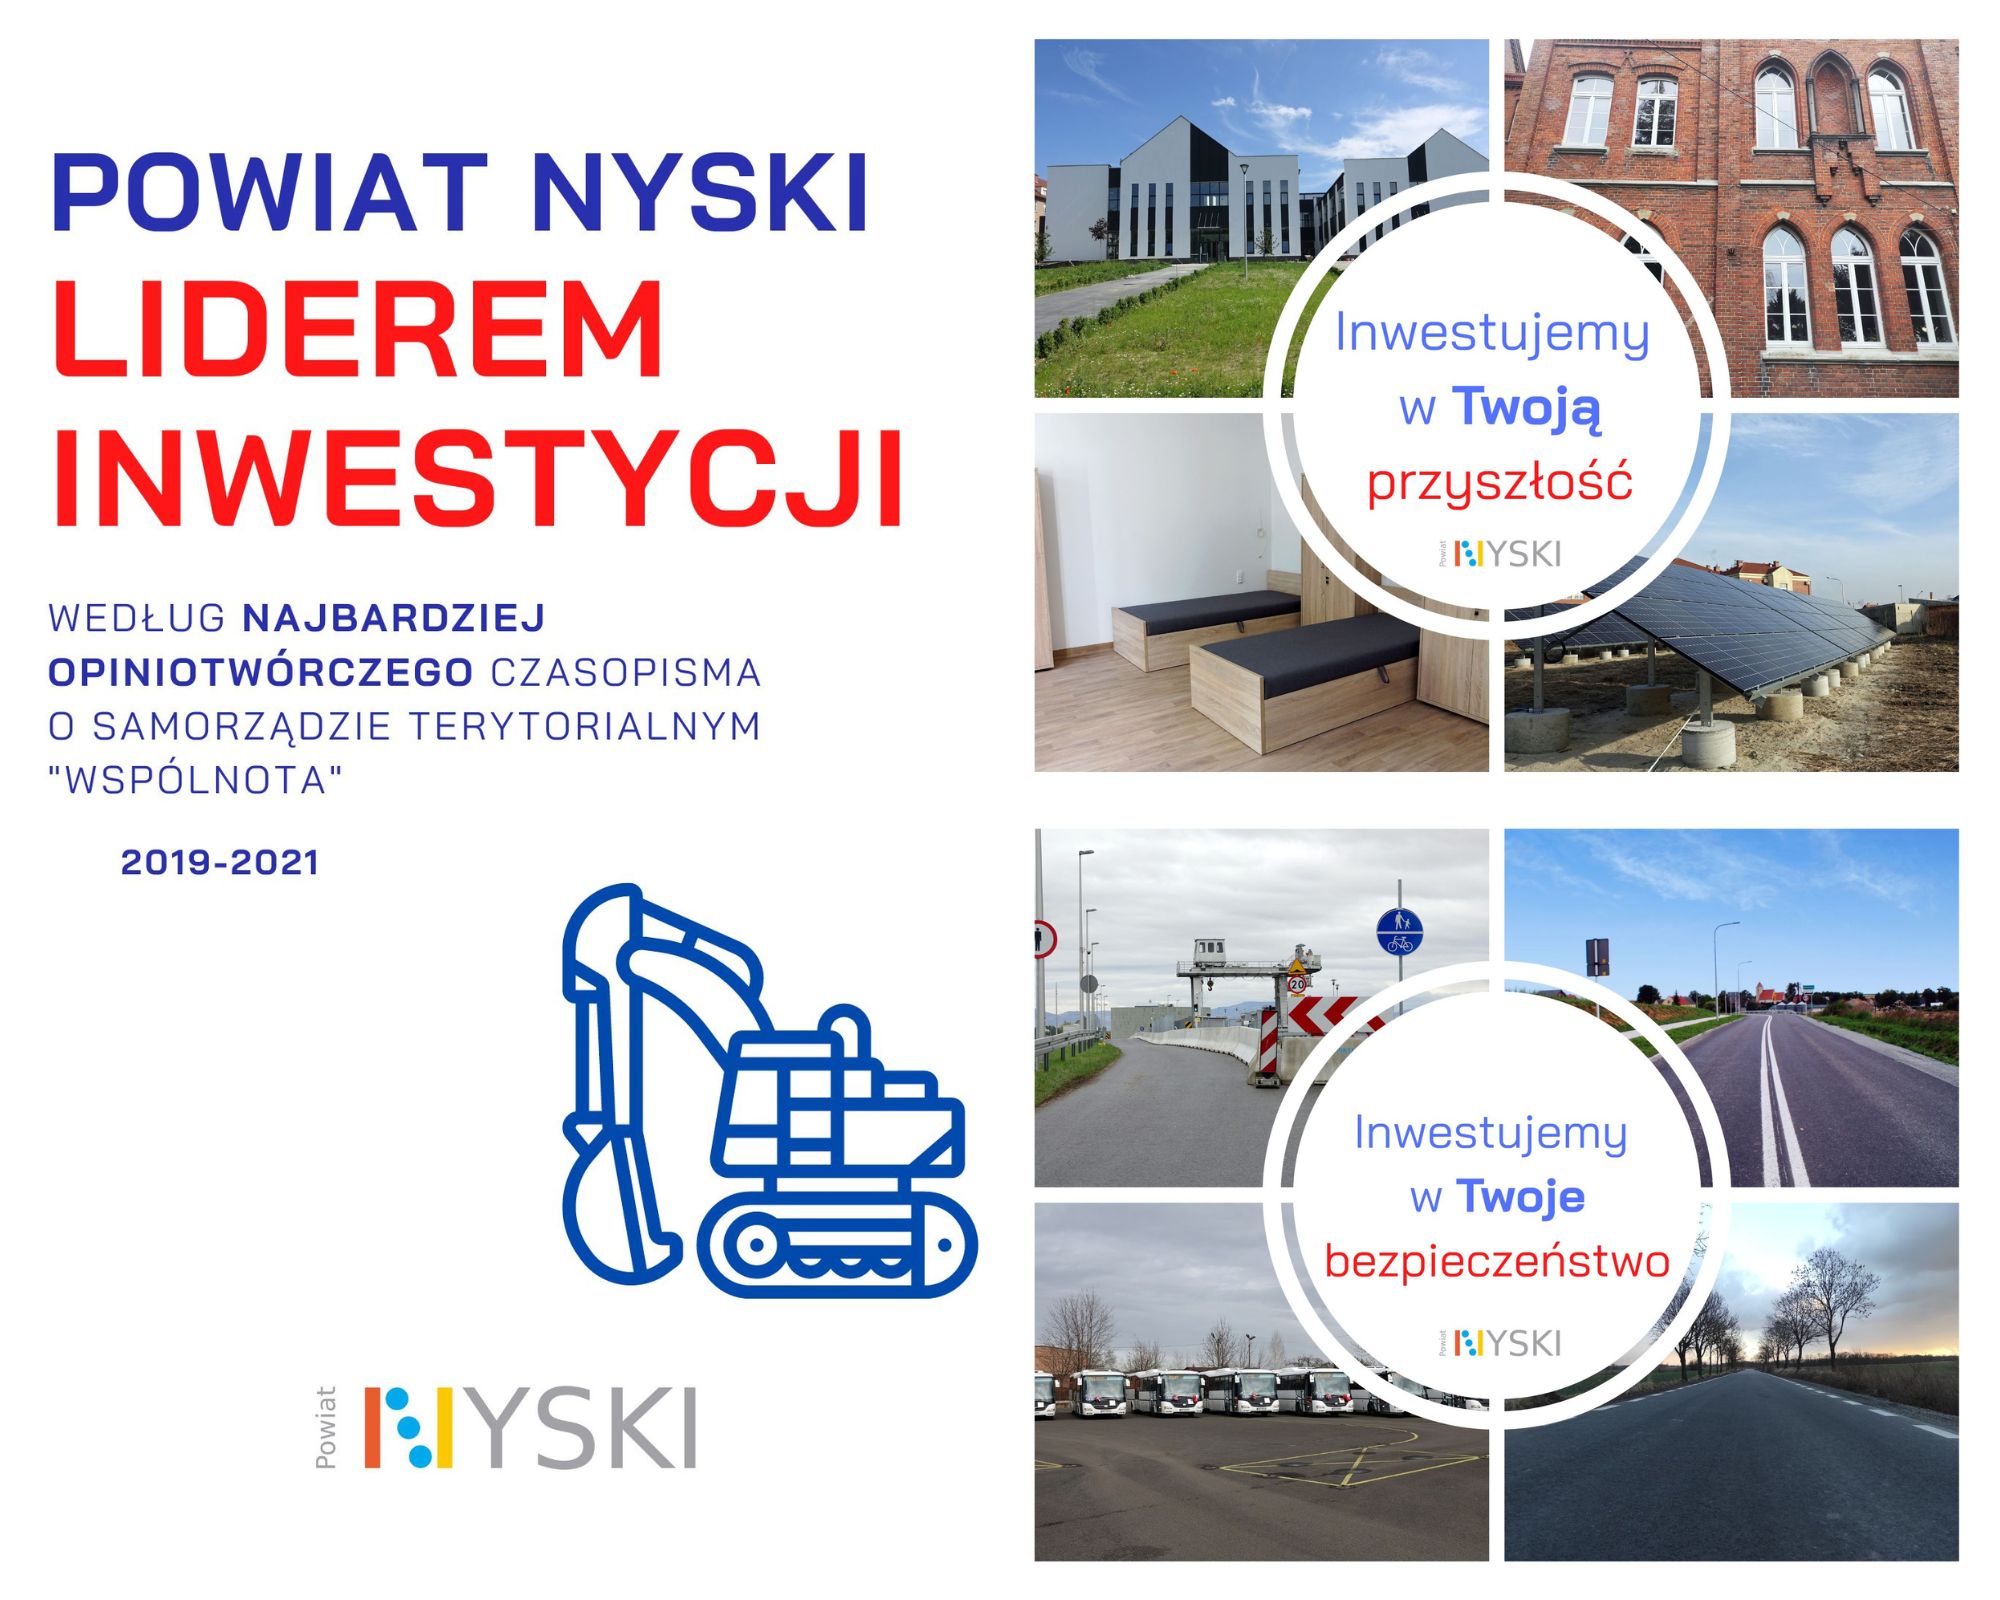 Powiat Nyski w latach 2019-2021 wydatkował na inwestycje 105 859 681 zł stając się tym samym liderem inwestycji w woj. opolskim